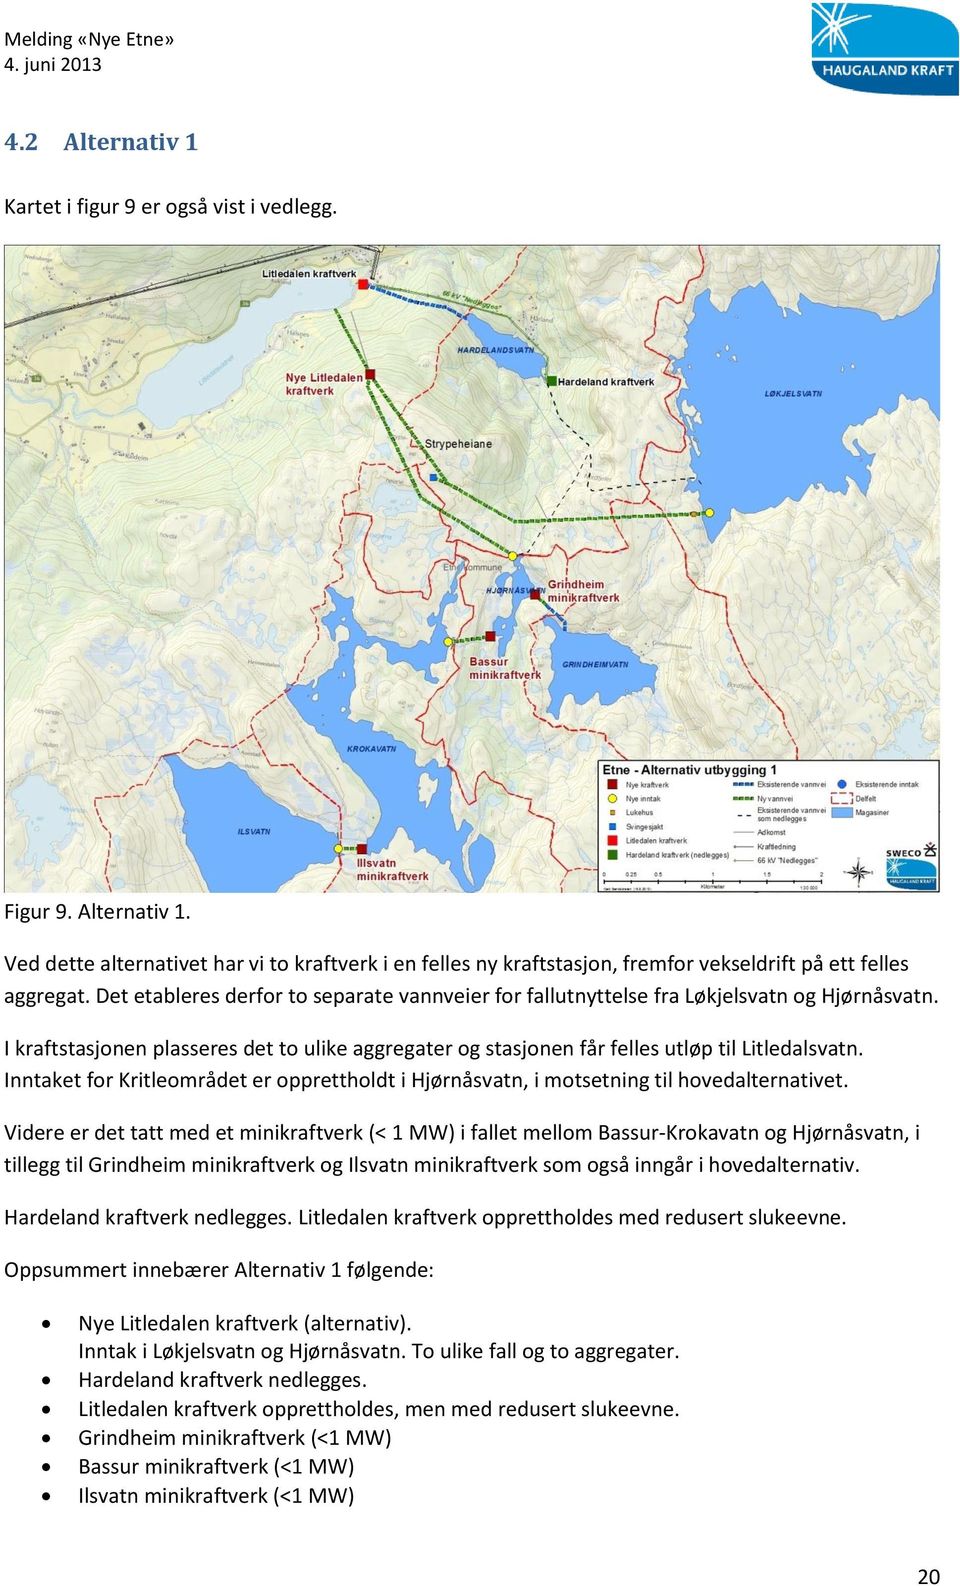 Inntaket for Kritleområdet er opprettholdt i Hjørnåsvatn, i motsetning til hovedalternativet.